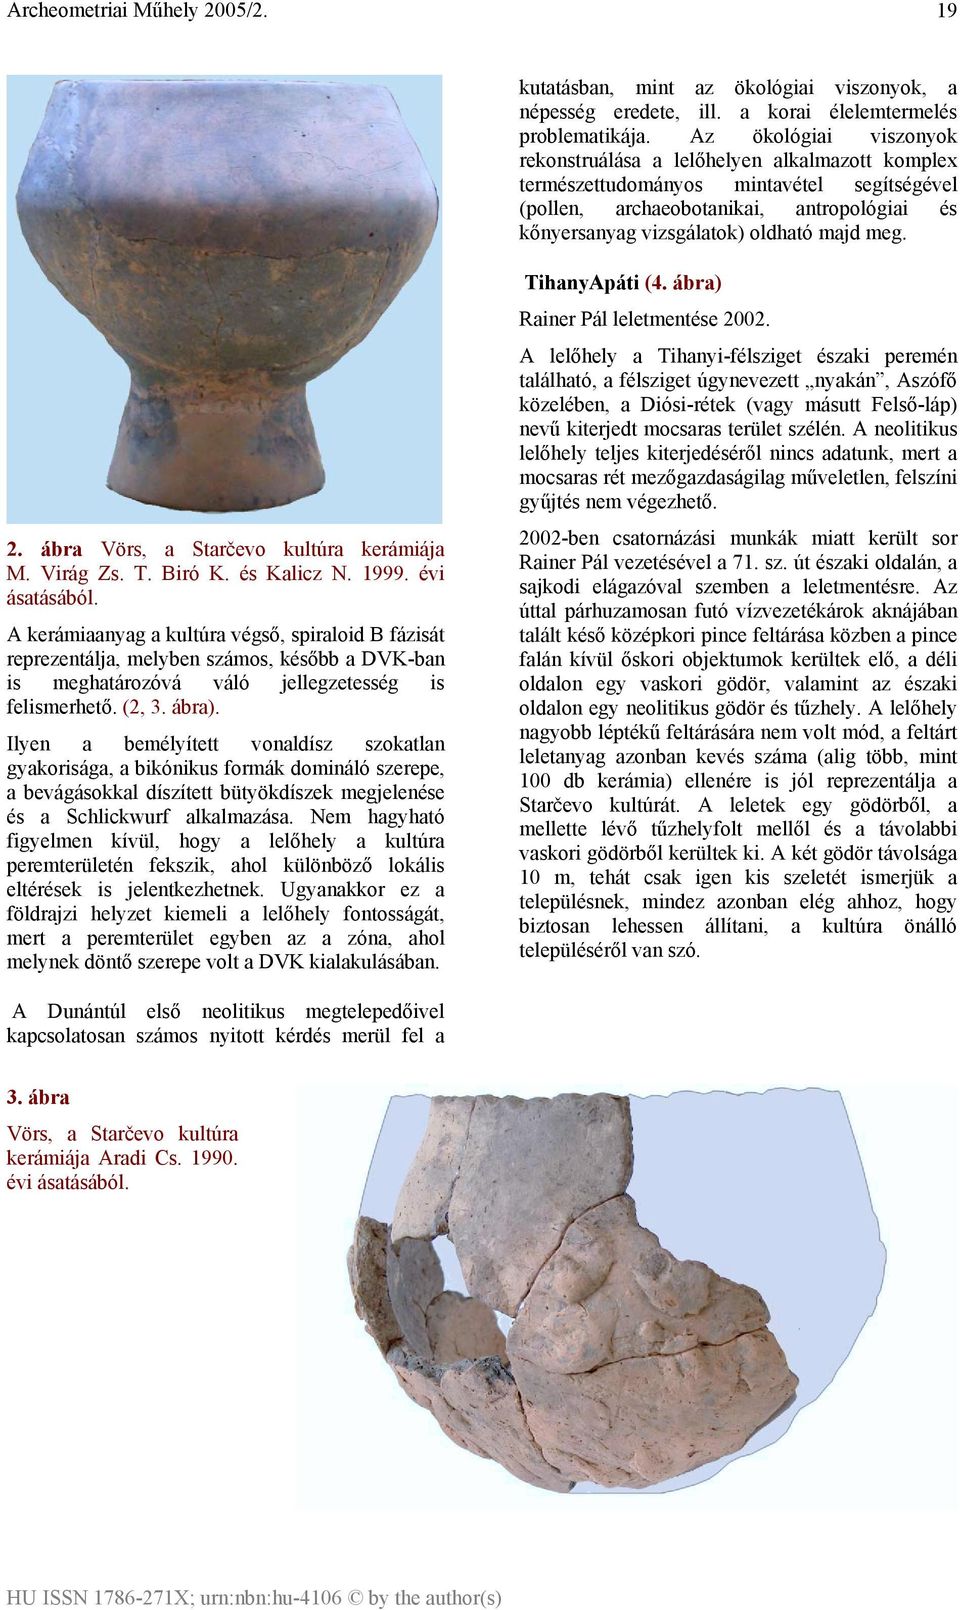 meg. 2. ábra Vörs, a Starčevo kultúra kerámiája M. Virág Zs. T. Biró K. és Kalicz N. 1999. évi ásatásából.